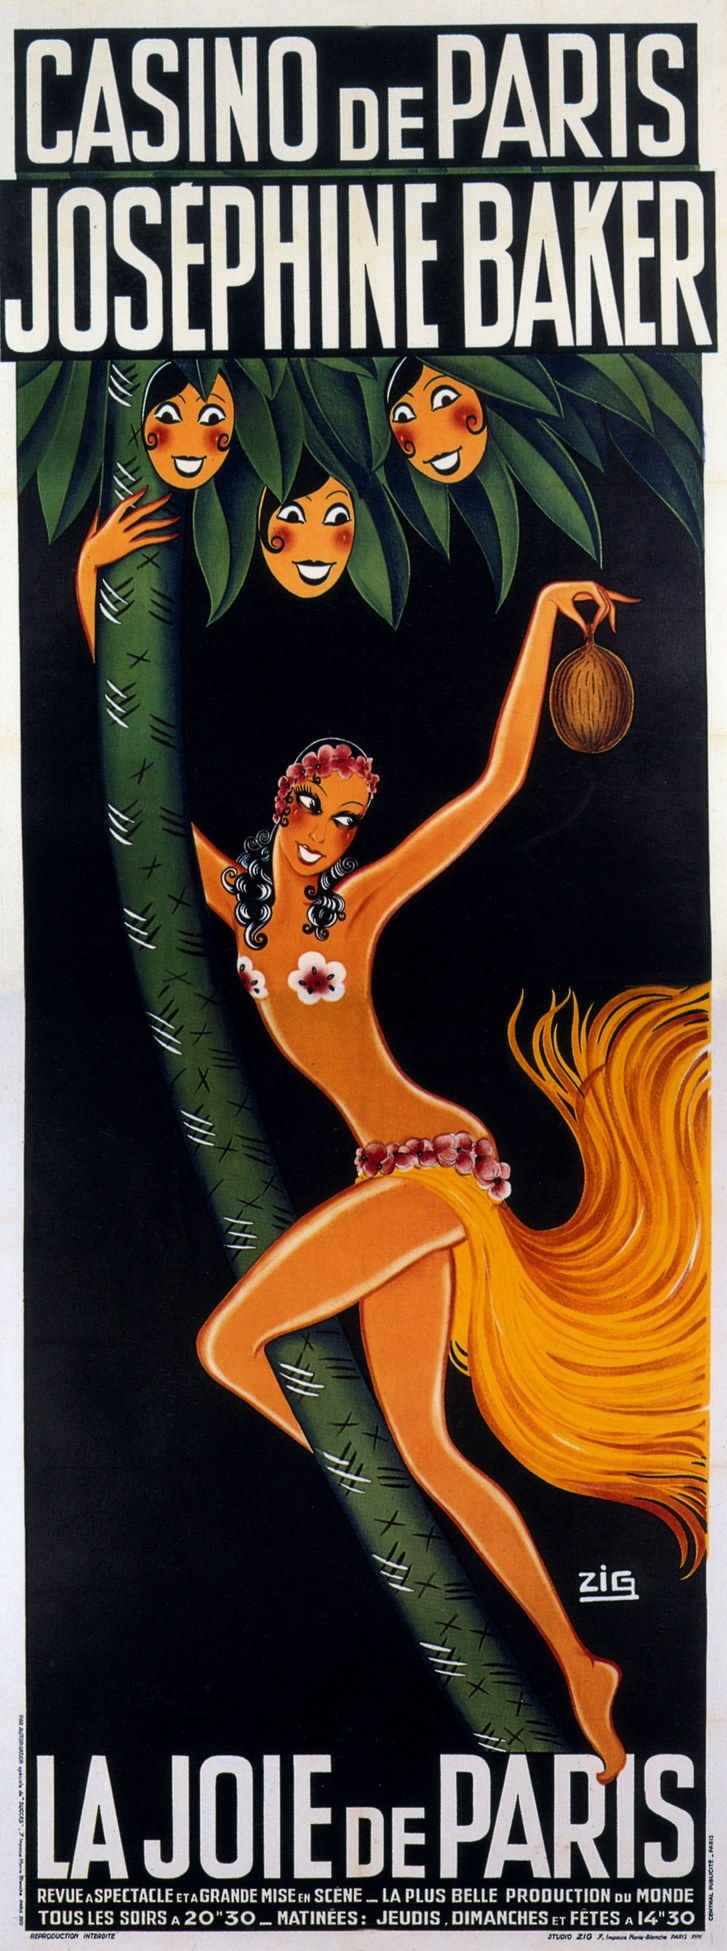 Zig的海报，1930年与Josephine Baker合作演出La joie de Paris